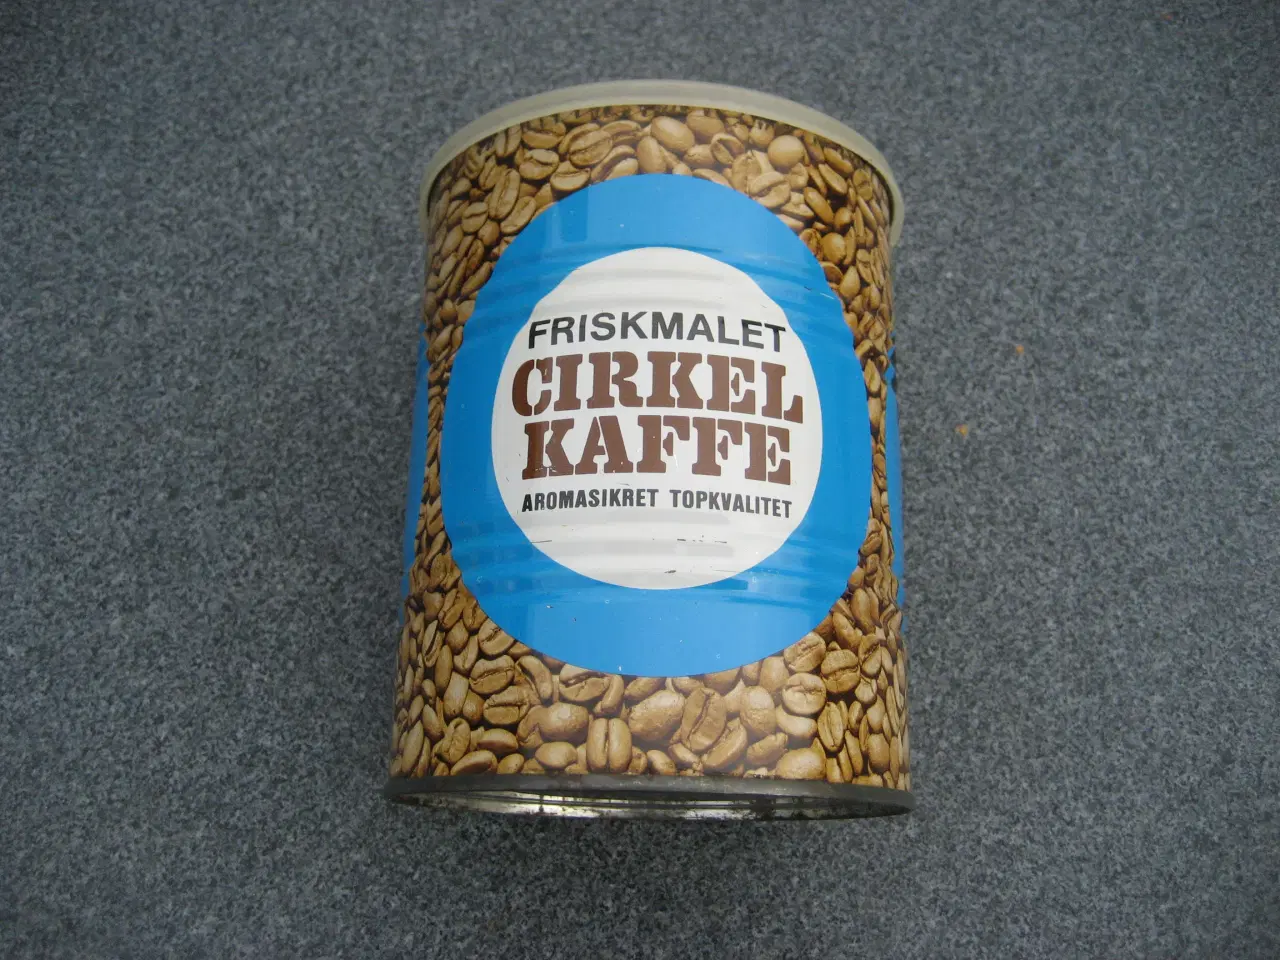 Billede 2 - Flot Cirkel-kaffedåse sælges